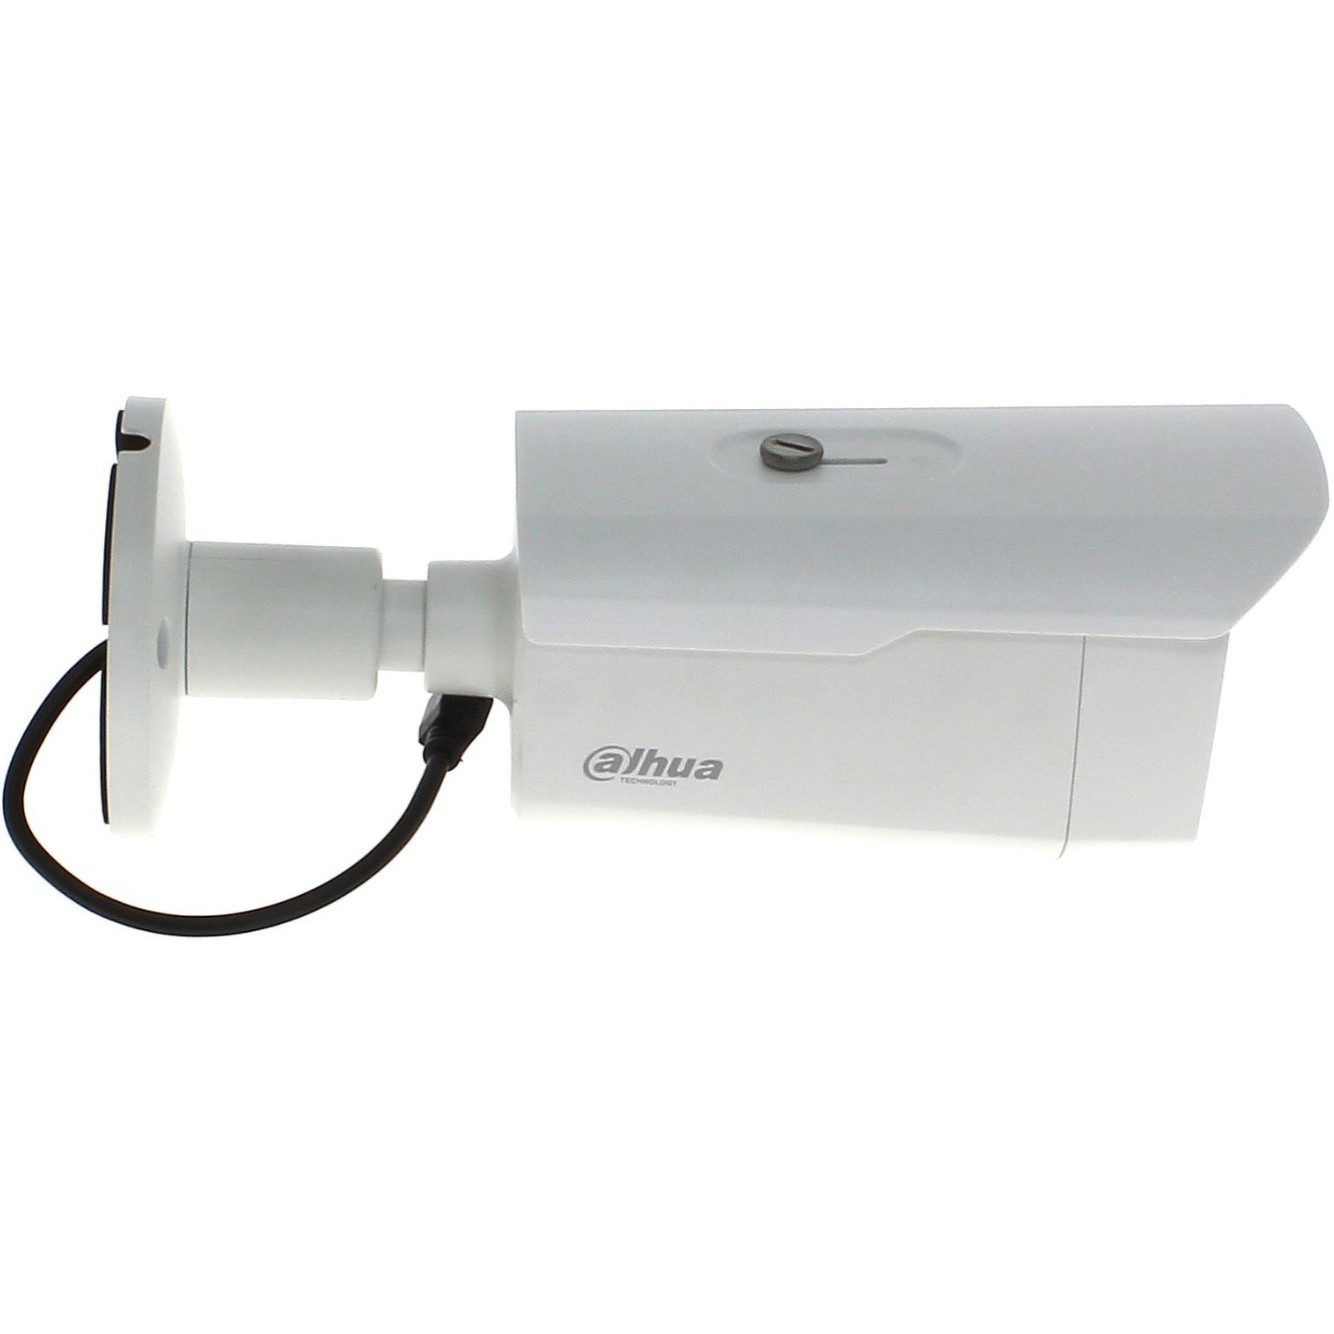 Камера видеонаблюдения Dahua DH-HAC-HFW1400DP-B 6 mm